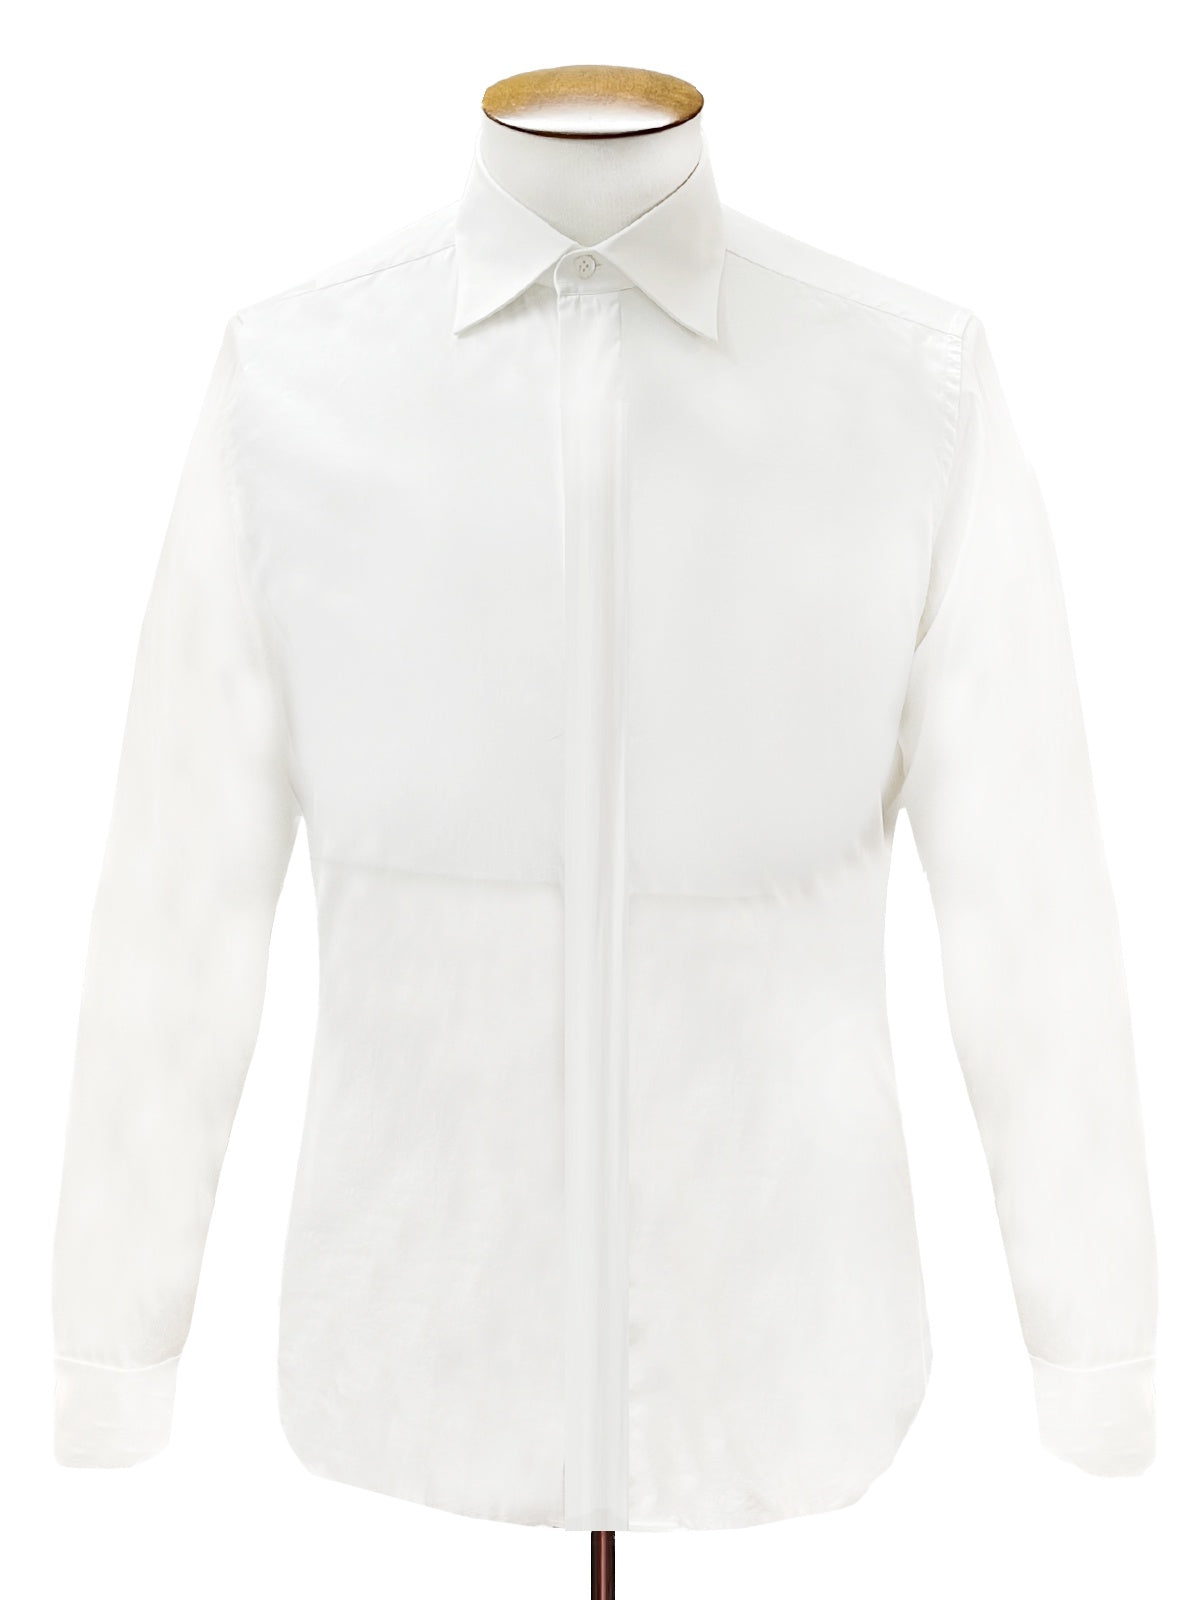 White Lightweight Cotton Blend Shirt